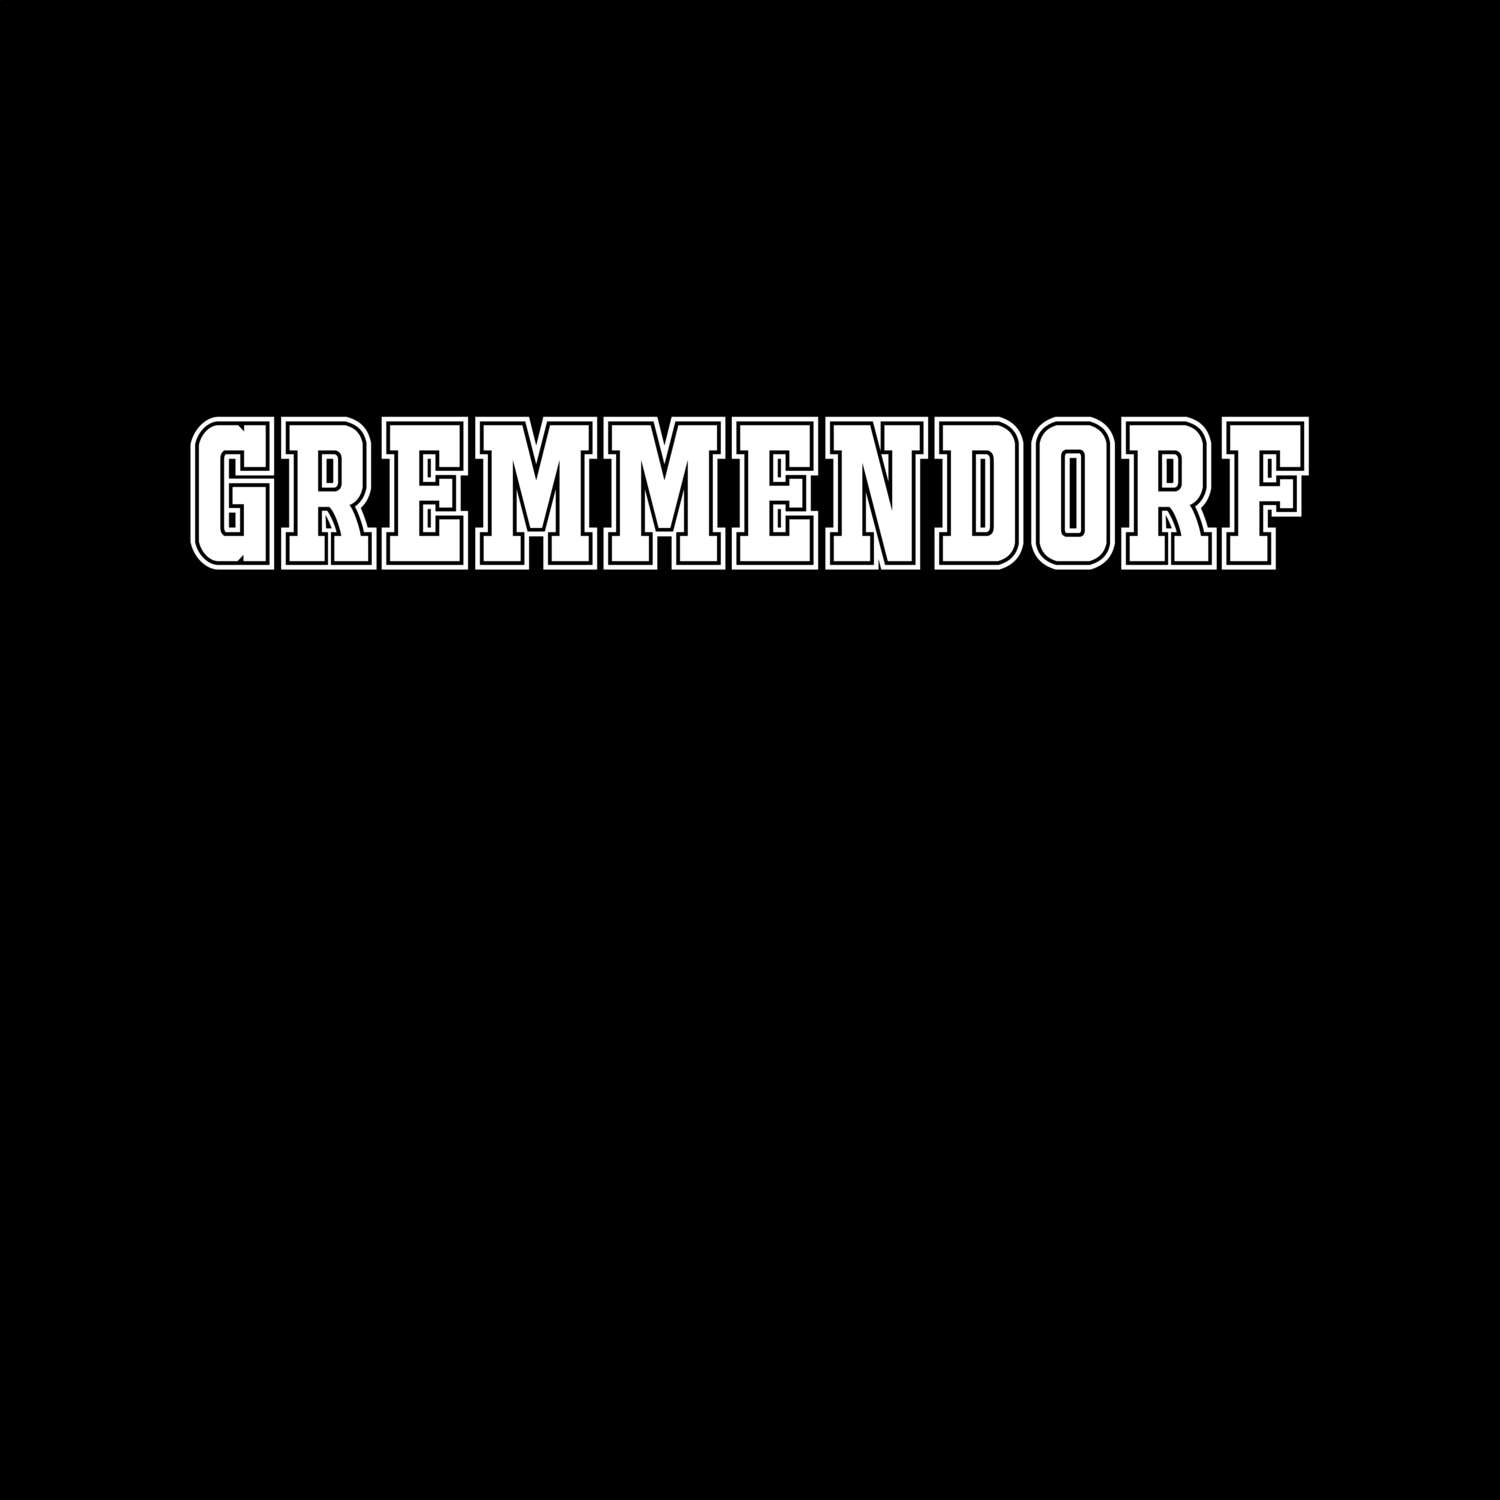 Gremmendorf T-Shirt »Classic«